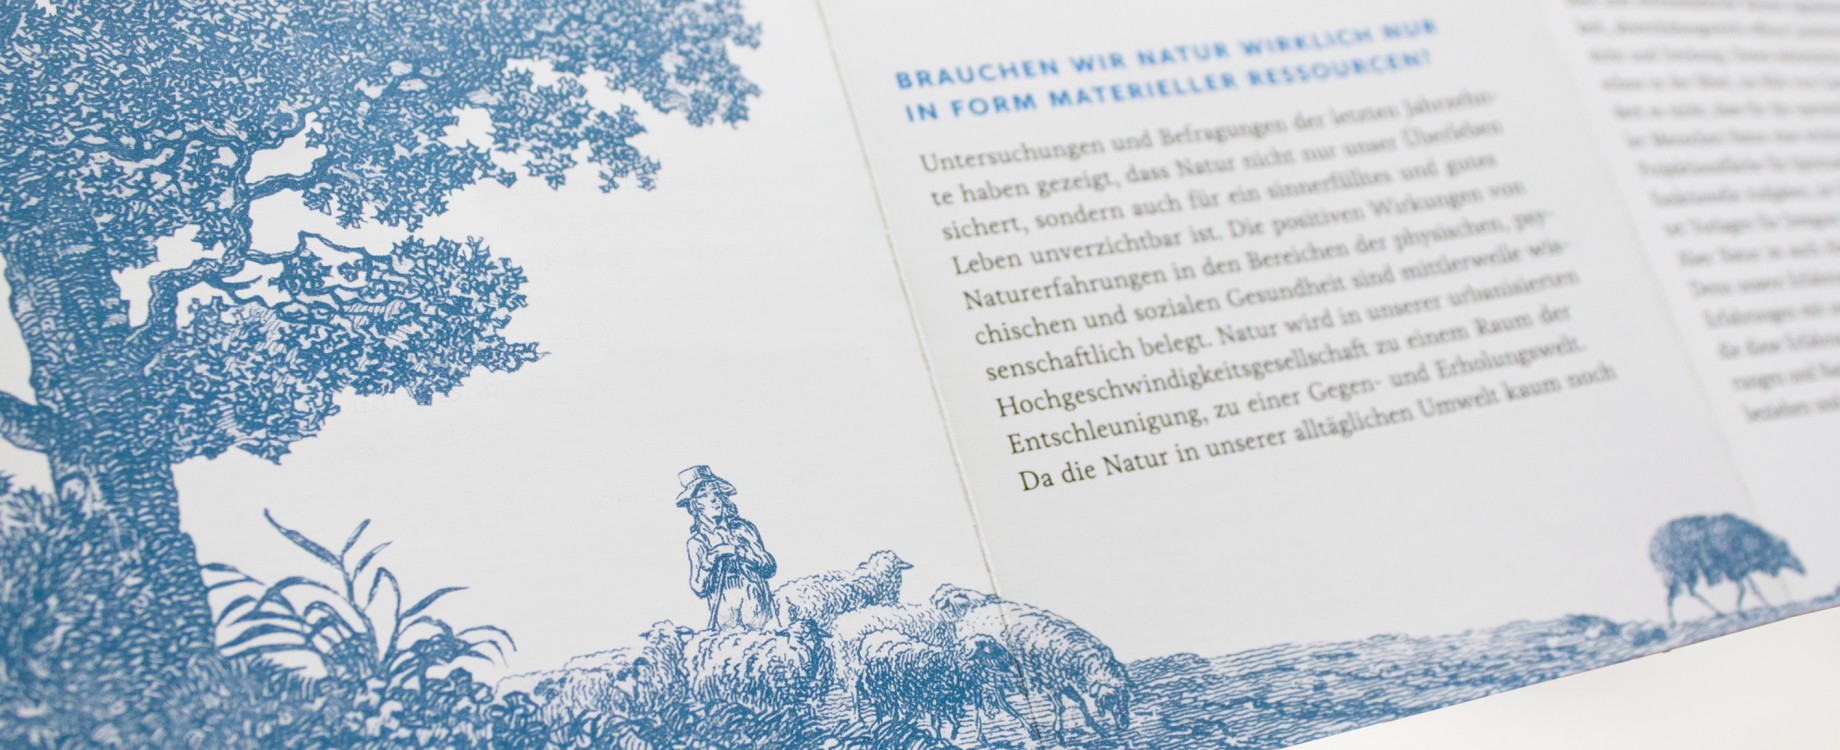 Sehnsuchtsraum Natur · Ausstellungsflyer (Detail)